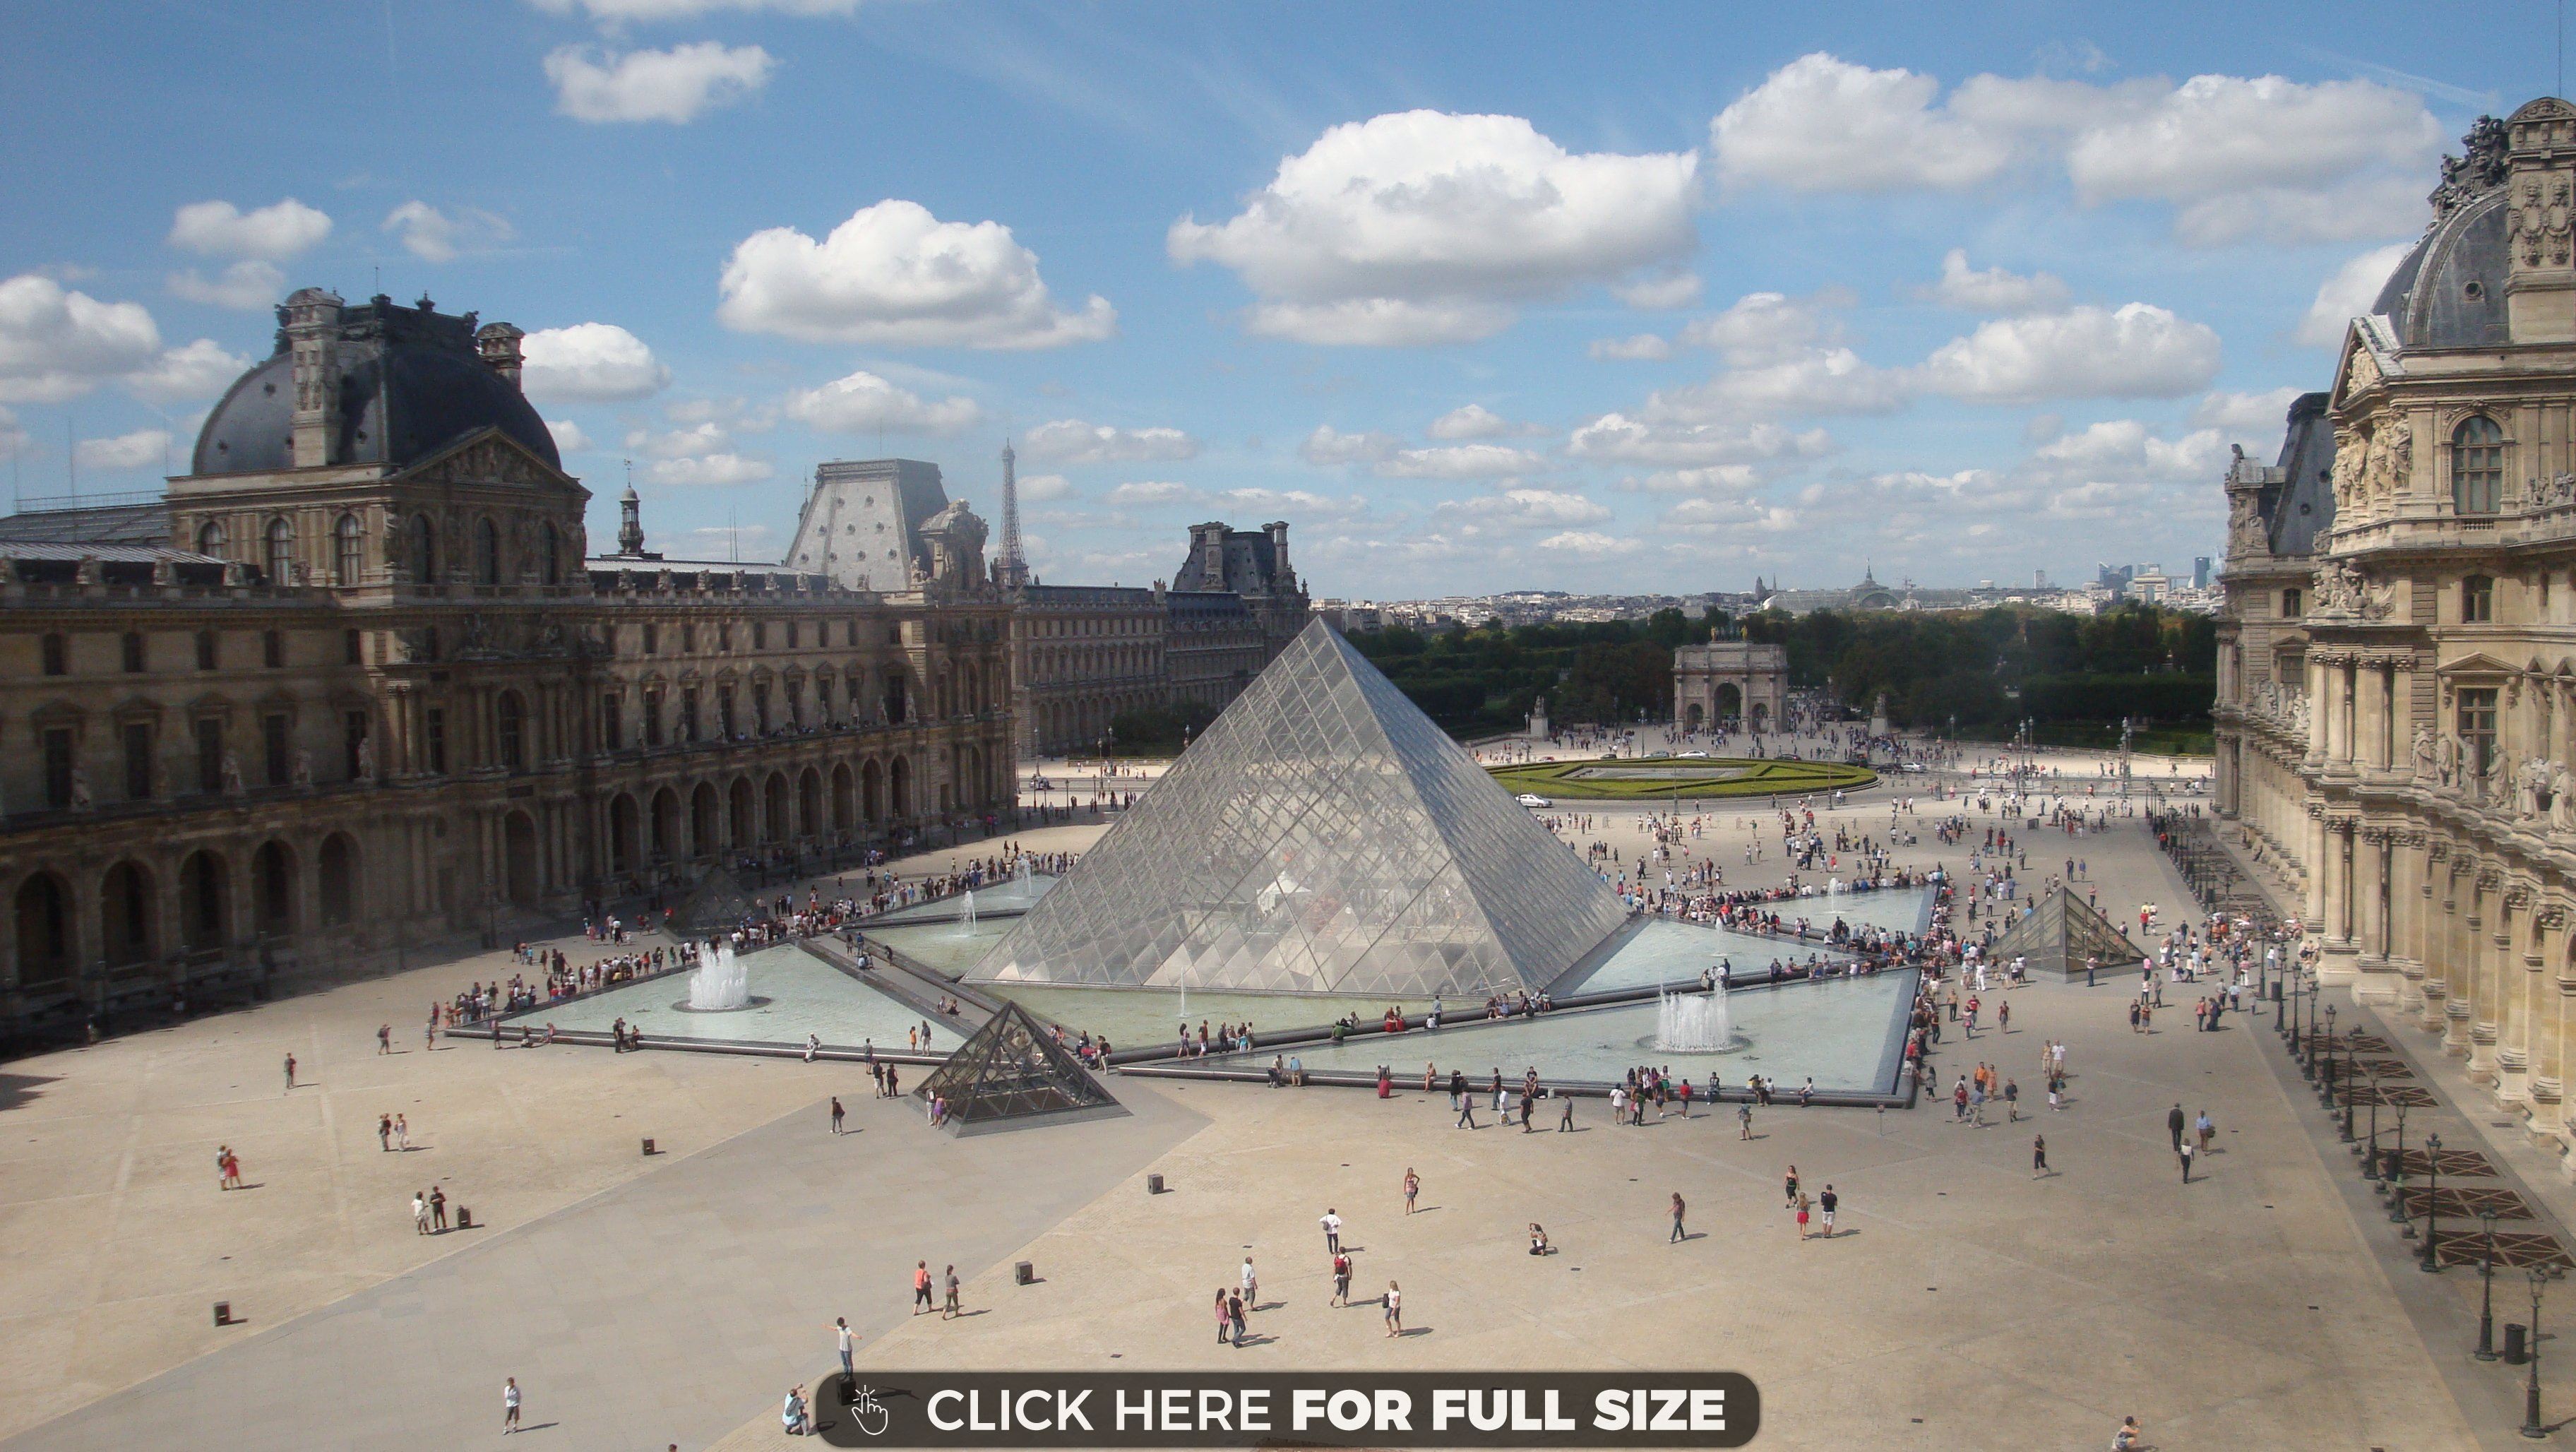 Top The Louvre Museum In Paris Wallpaper